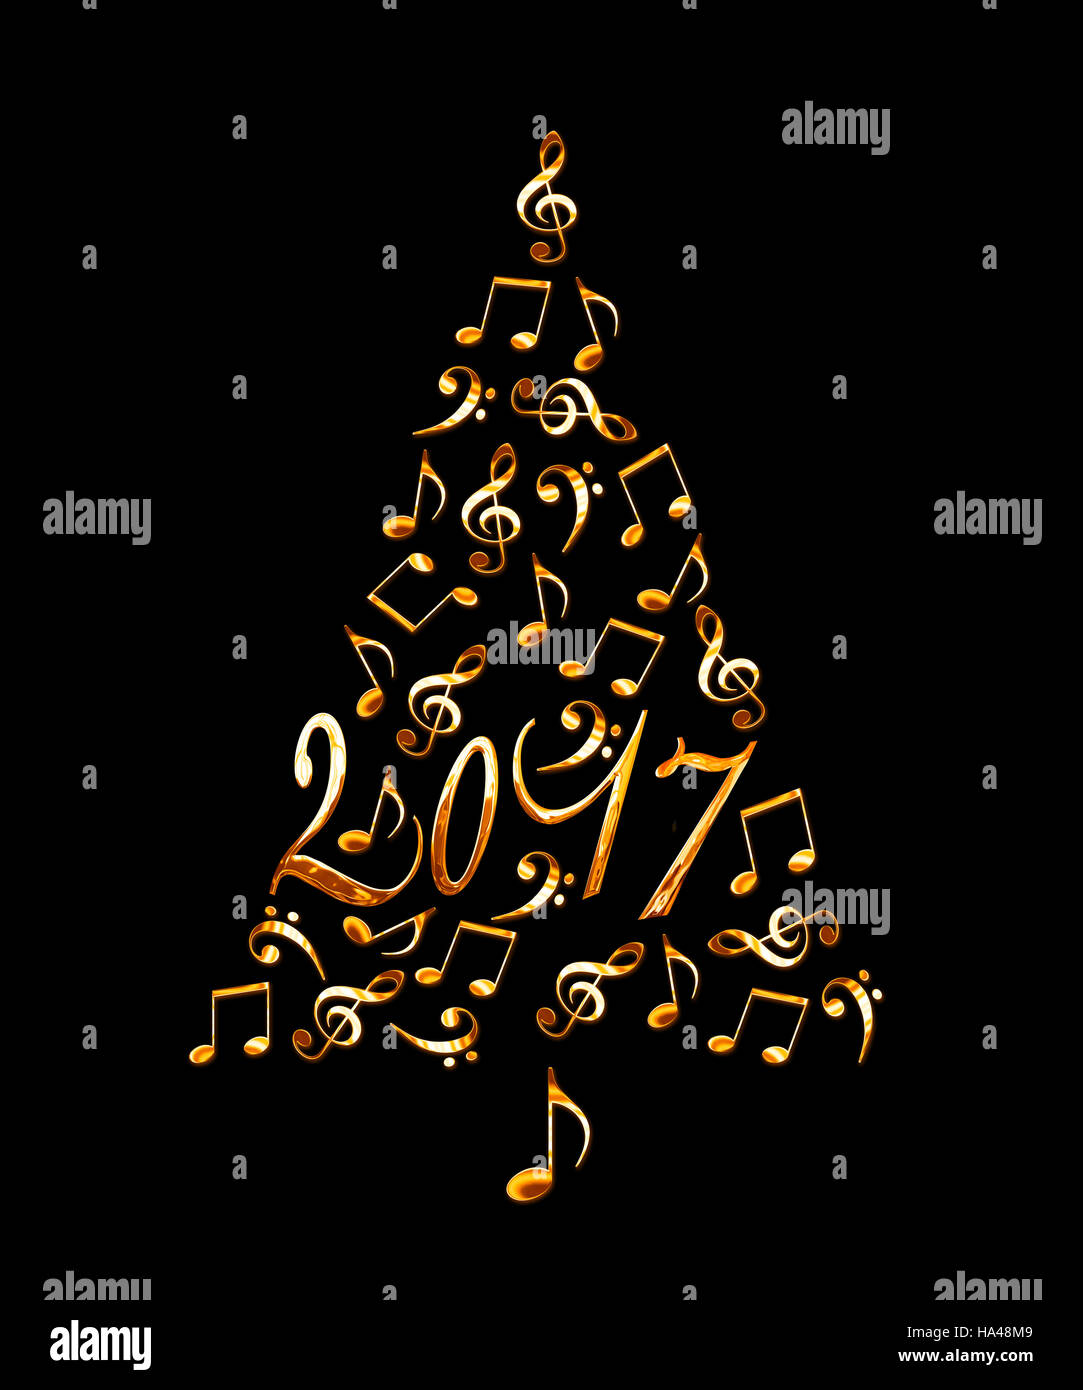 2017 Albero di natale con metallo dorato note musicali isolati su sfondo nero Foto Stock